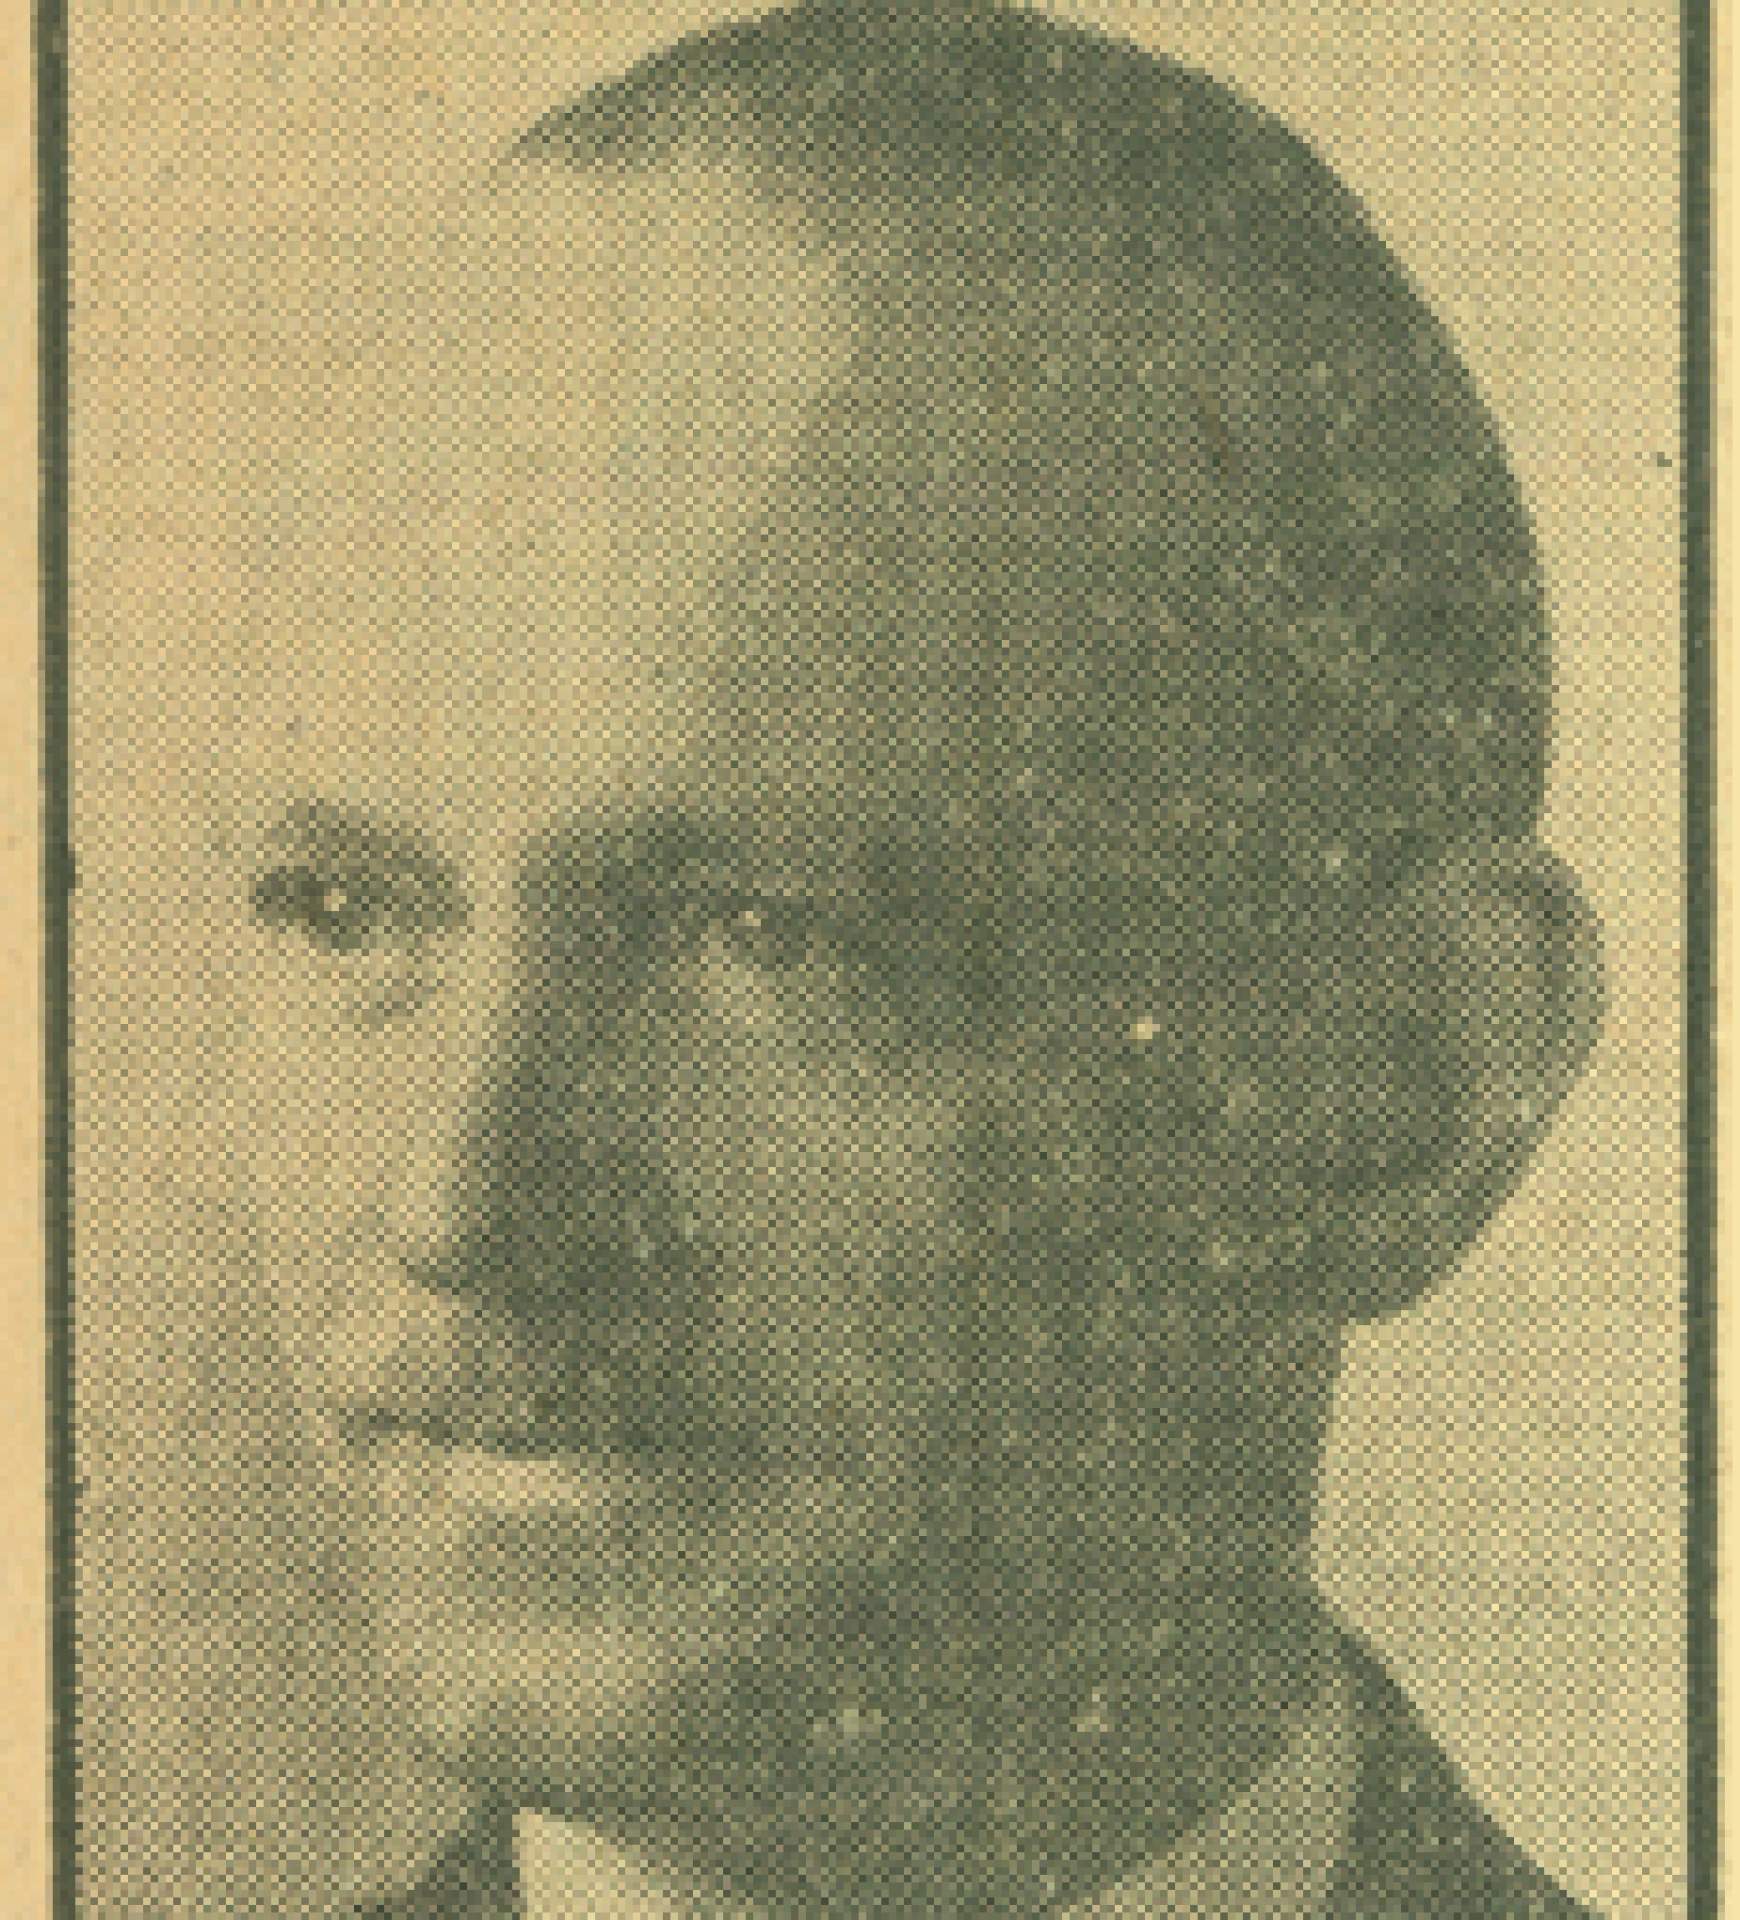 Leonard C. Butler